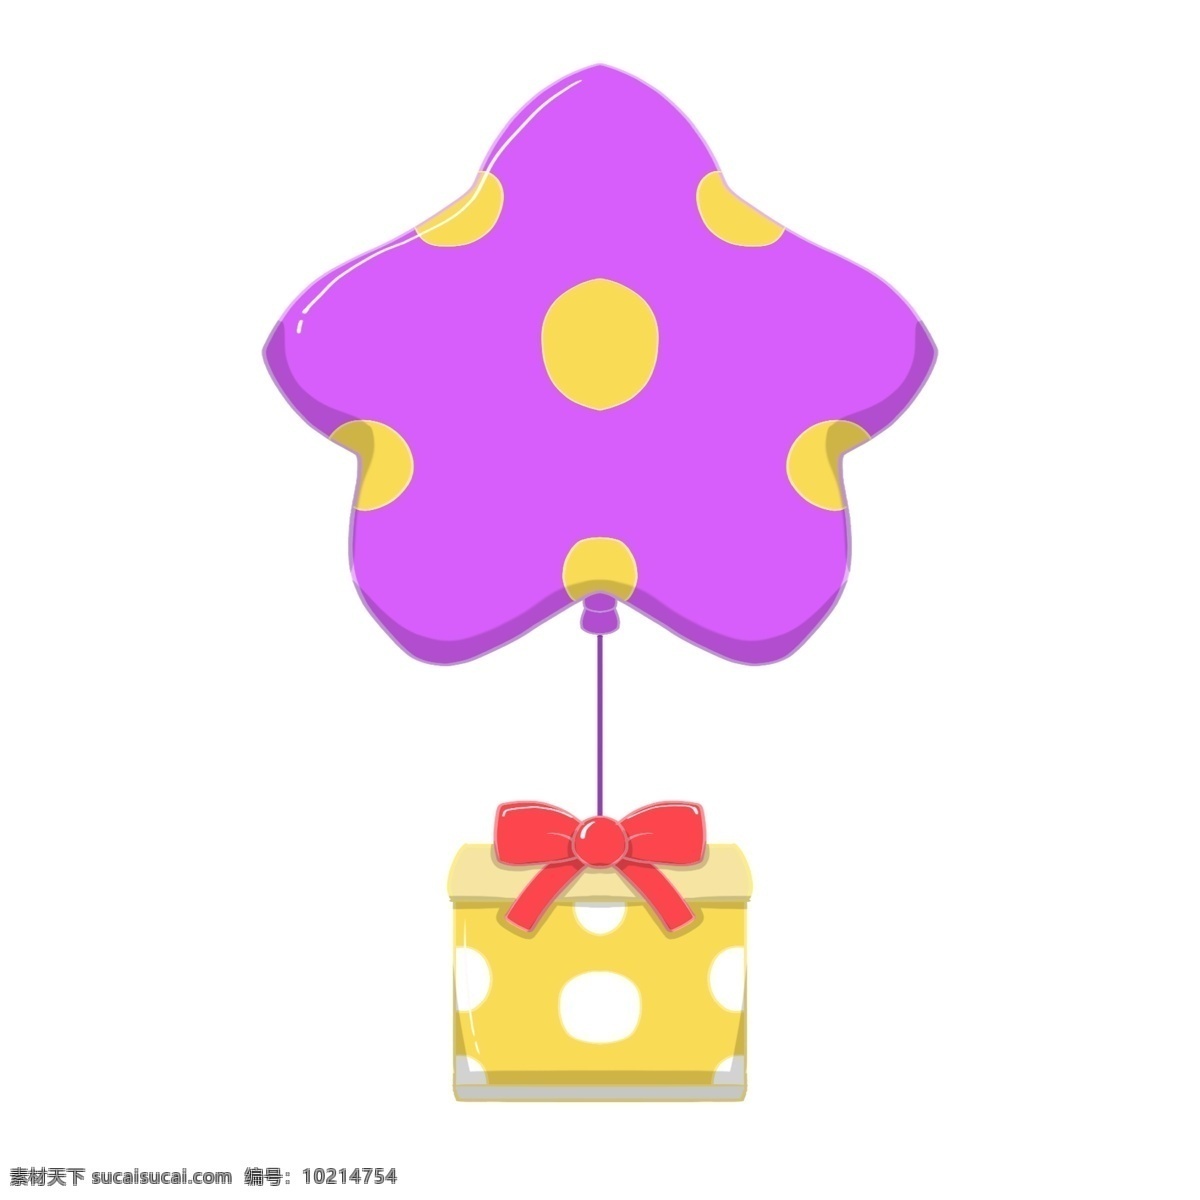 紫色 气球 礼物 插画 五角星气球 黄色的礼盒 红色的丝带 红色的蝴蝶结 漂亮